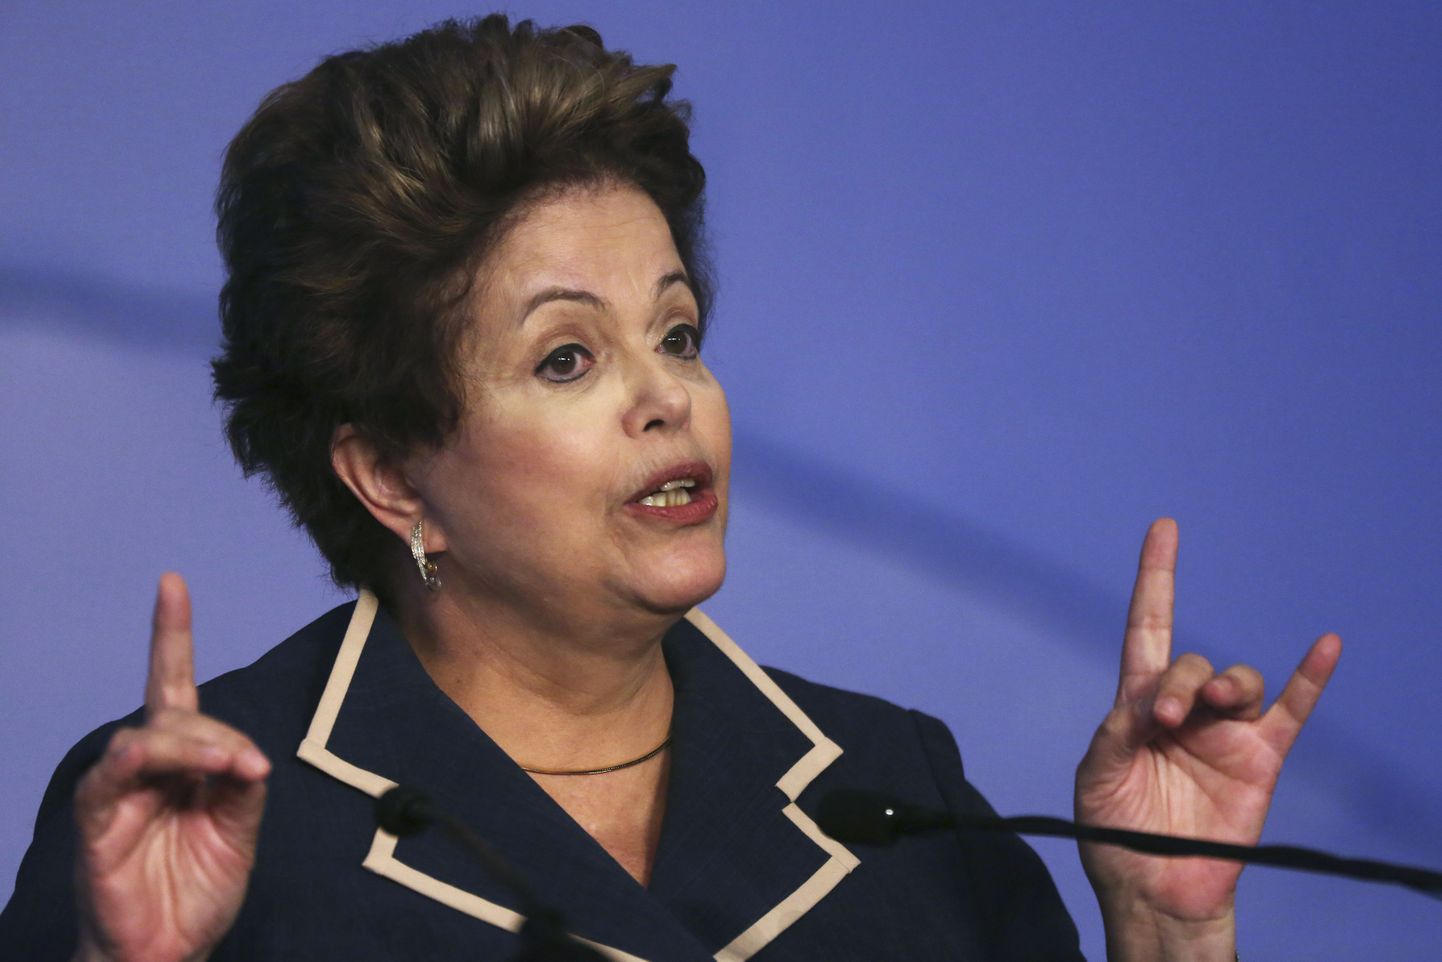 Brasiilia president Dilma Rousseff